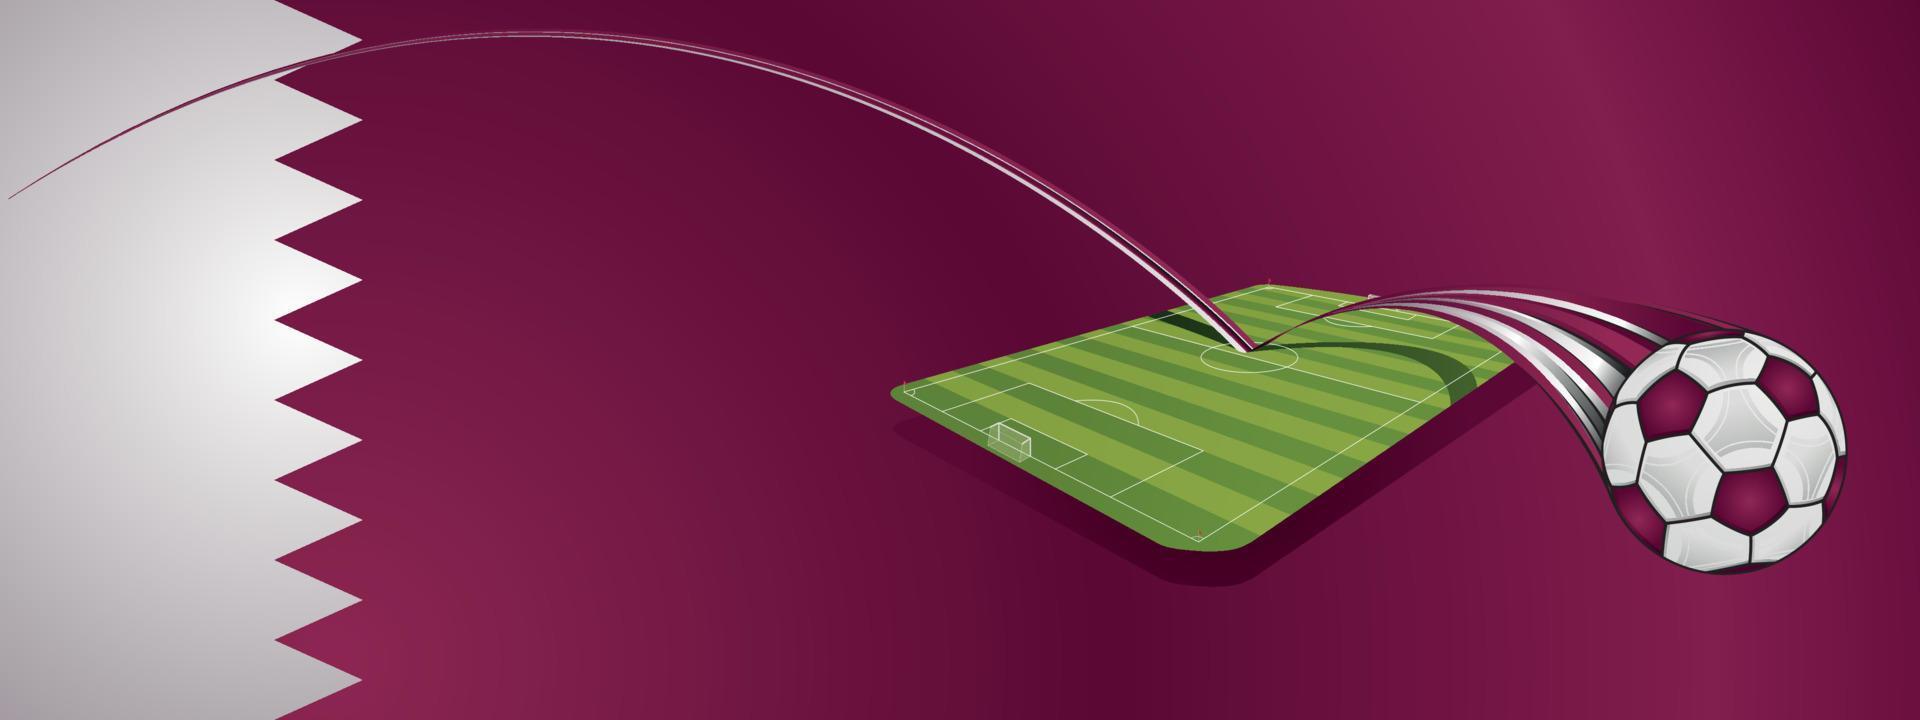 balón de fútbol de color blanco y rojo rebotando en un campo de fútbol sobre un fondo con la bandera de qatar. imagen vectorial vector